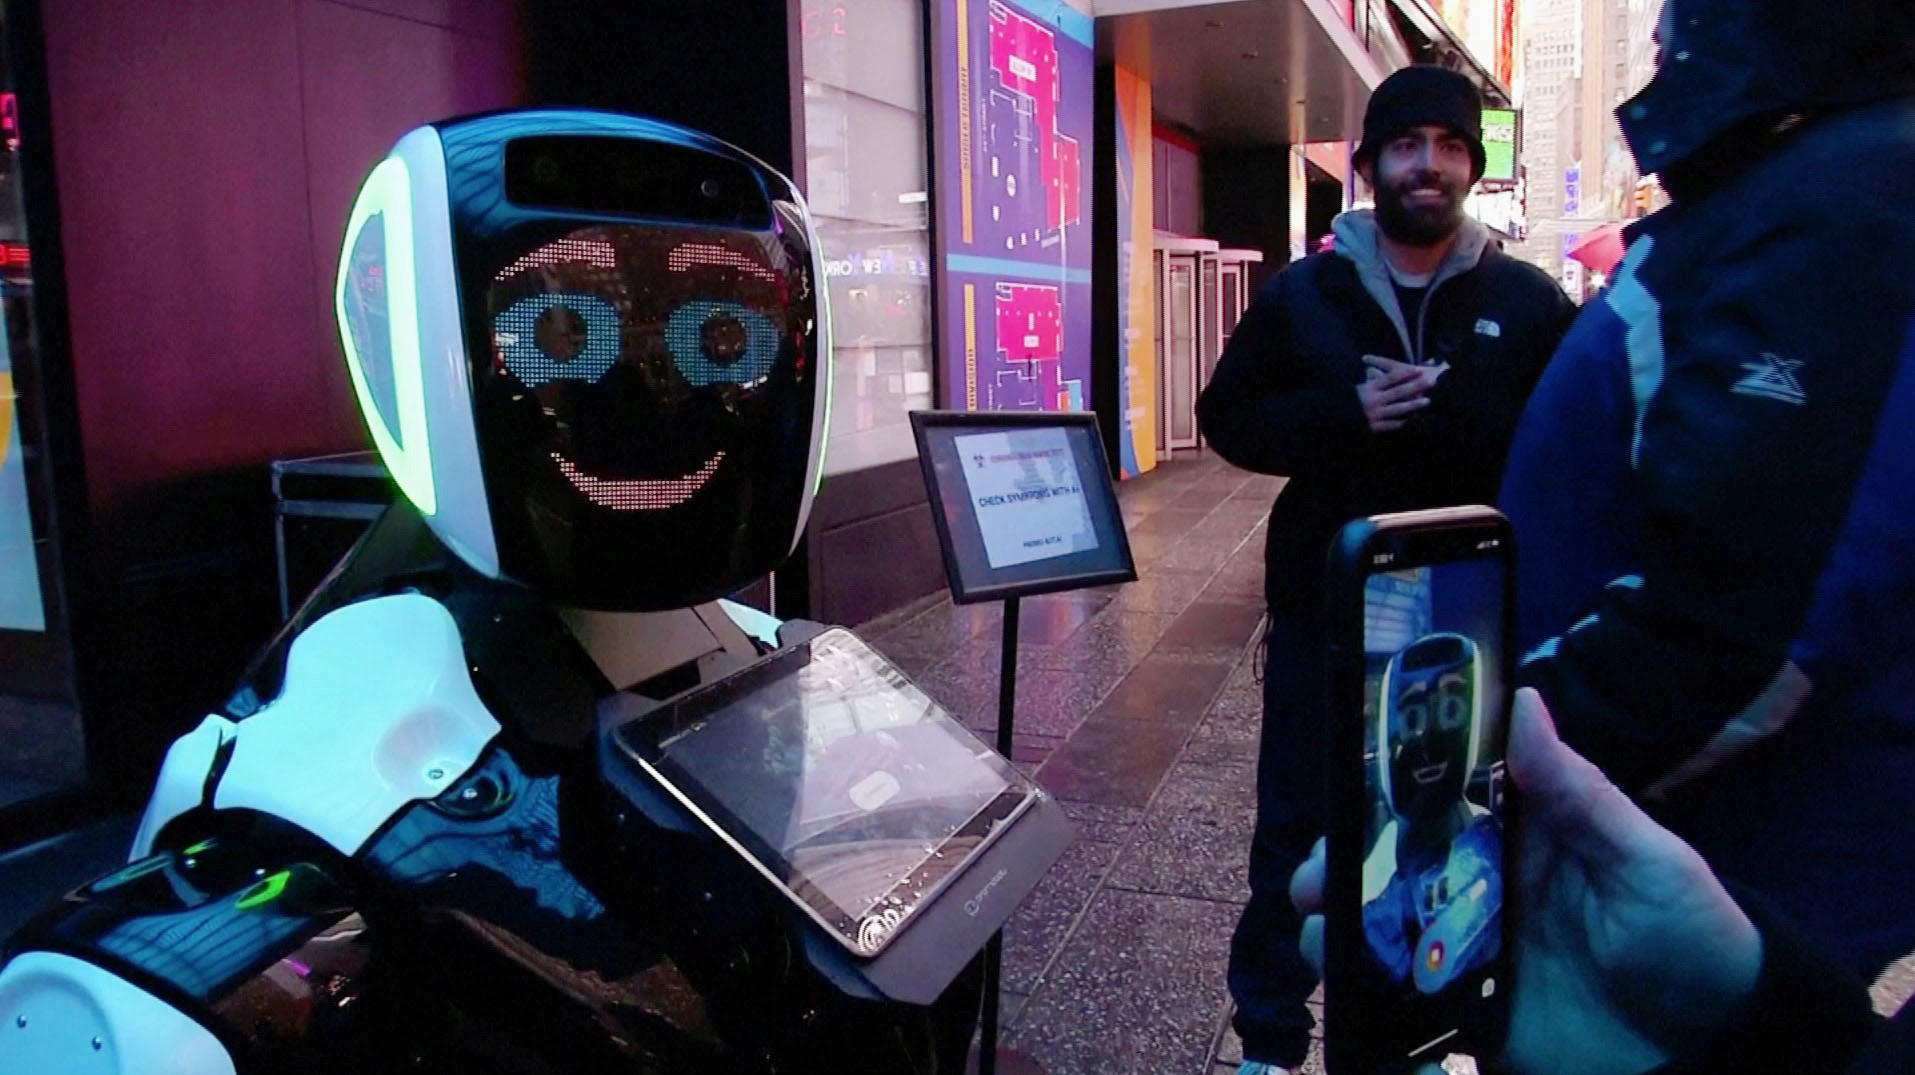 Минувачи на Тајмс сквер комуницираат со роботот Промобот кој ја информира јавноста за симптомите на коронавирусот и спречување на негово ширење. Снимка од видео. Њујорк.

